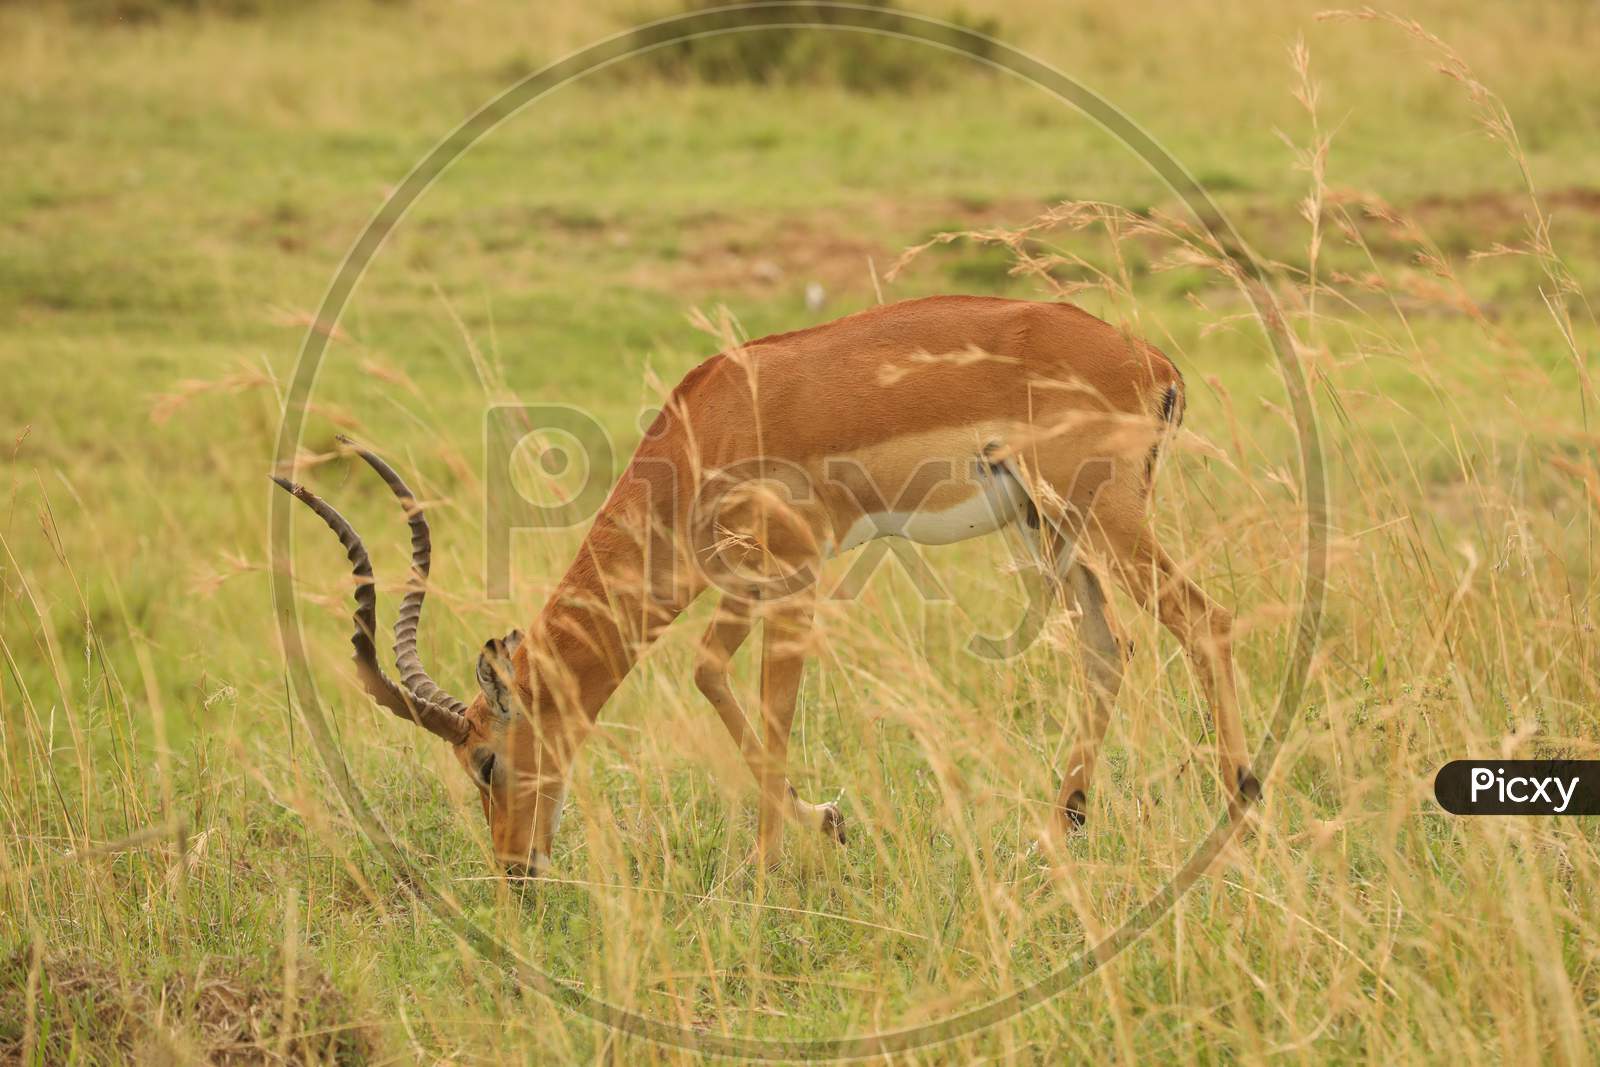 A Thomson's gazelle